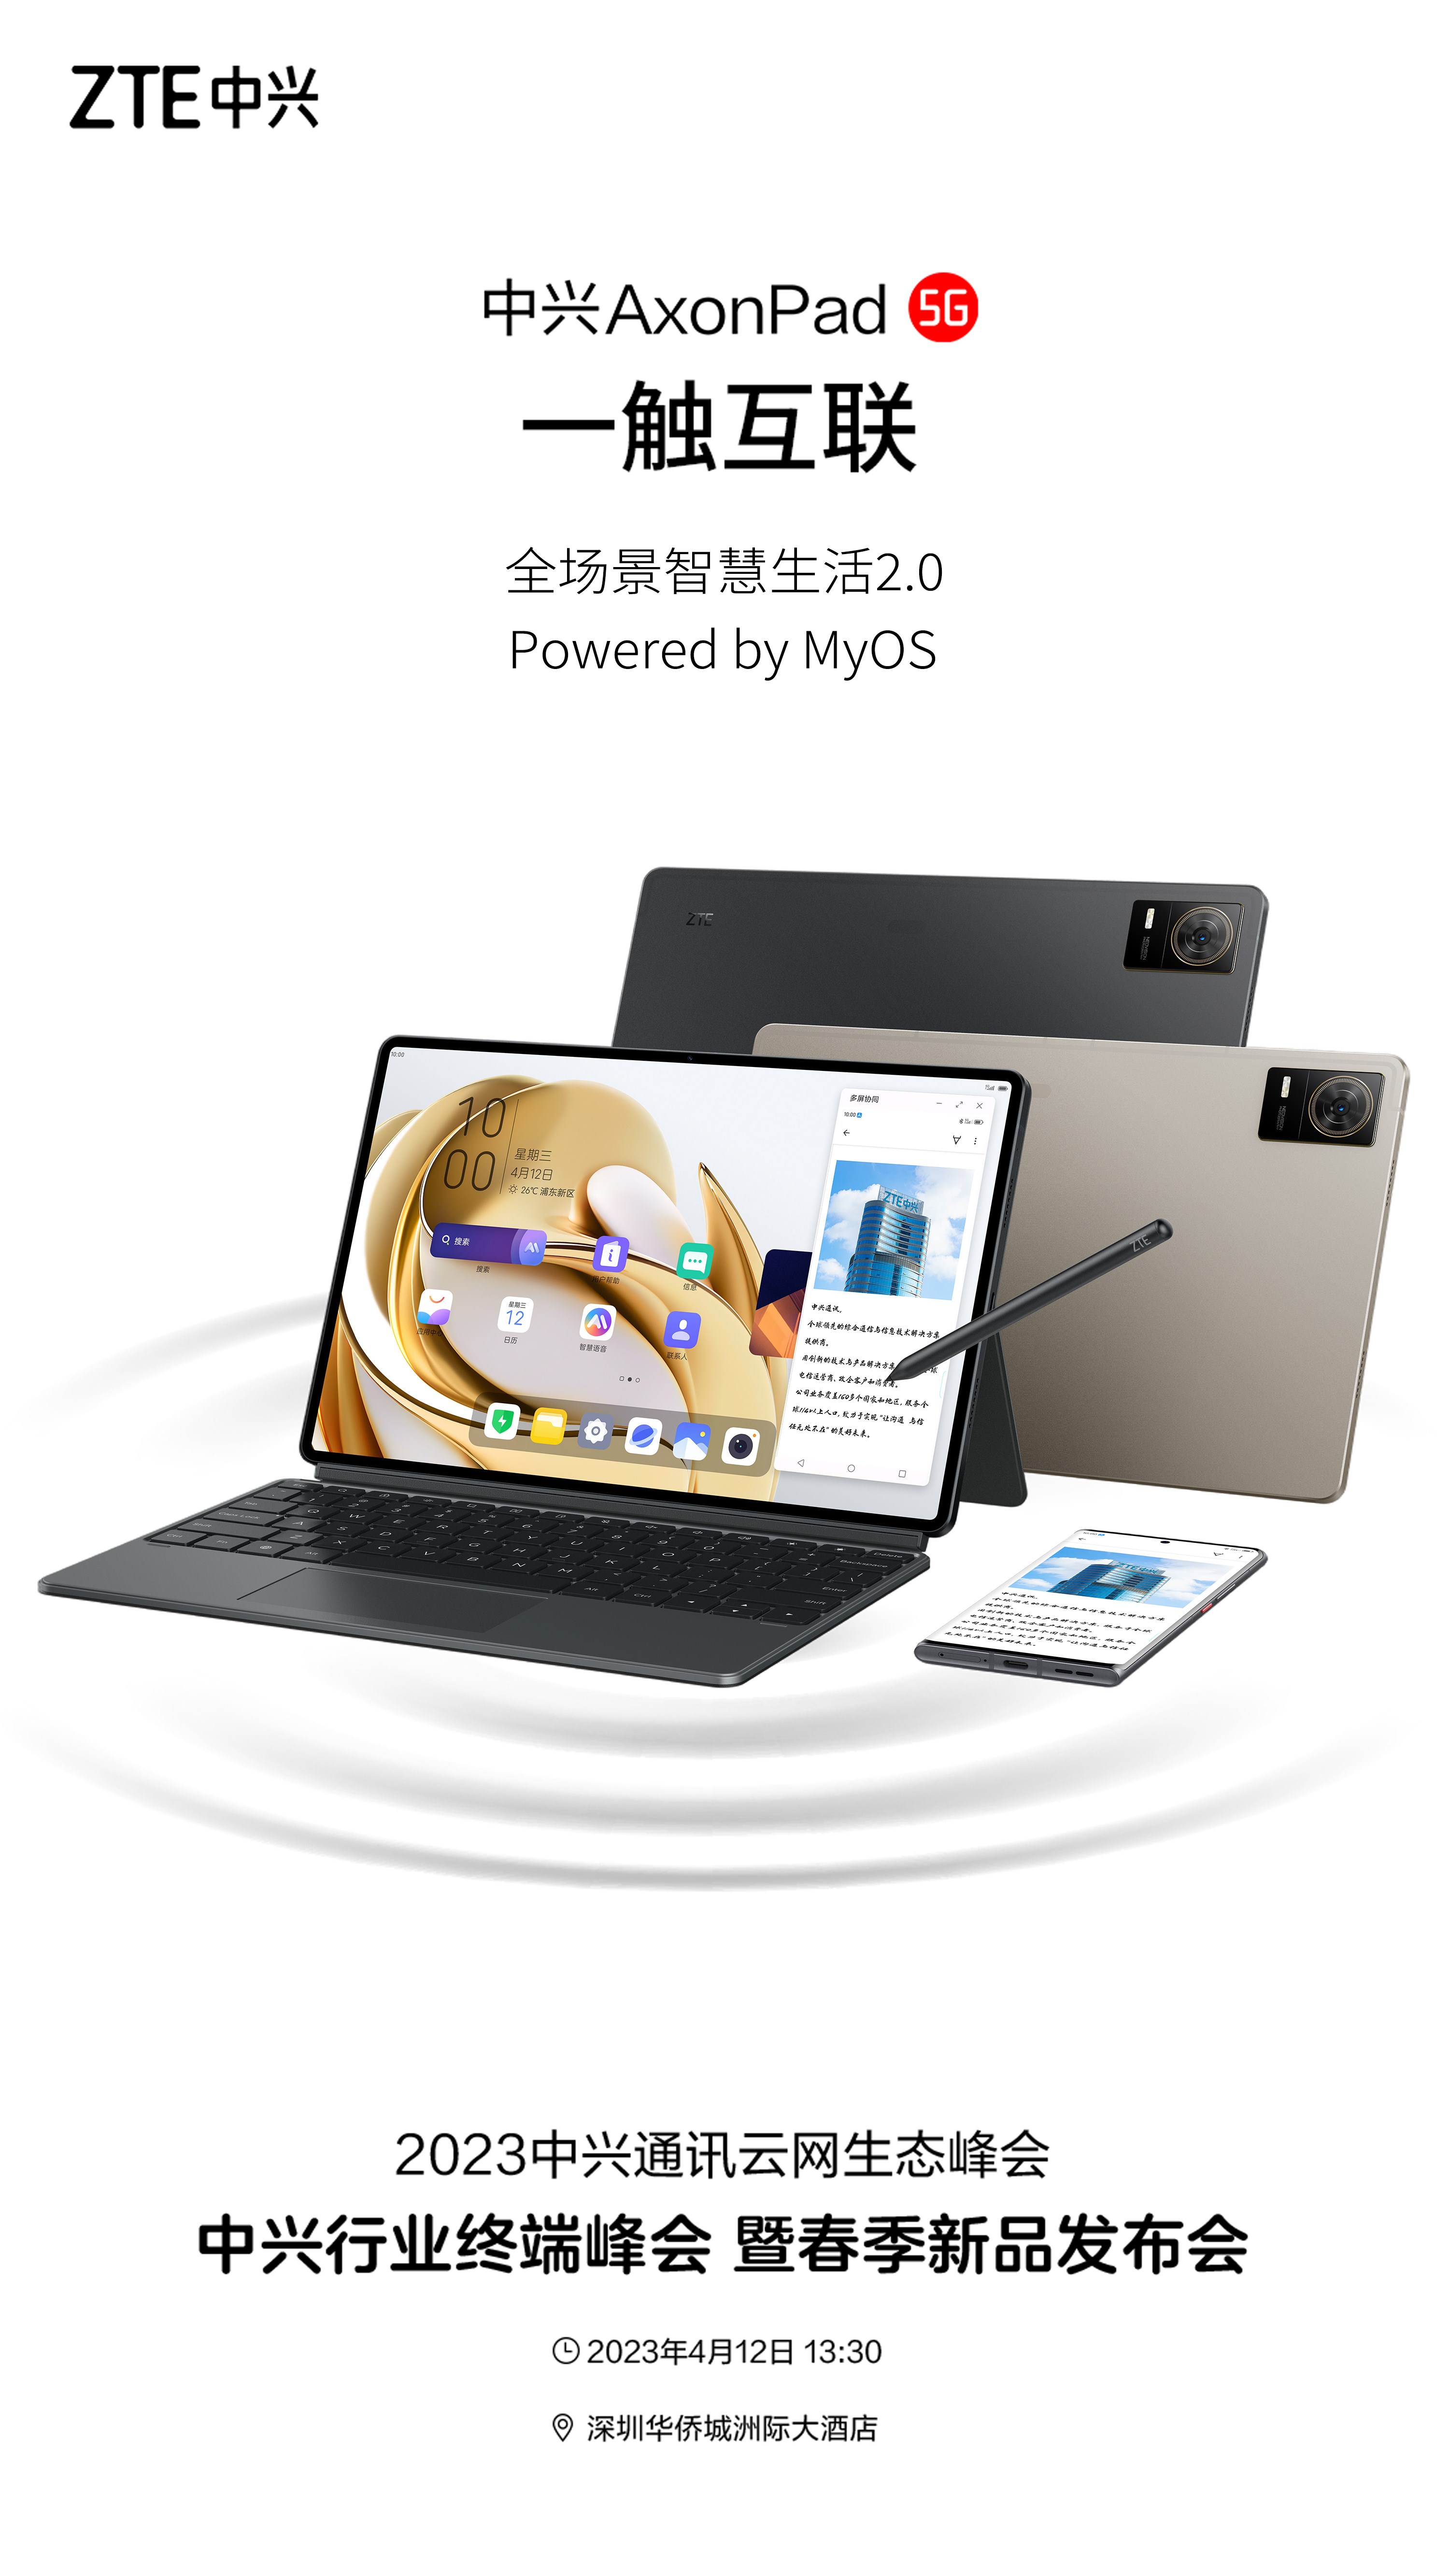 ZTE'nin yeni tableti yüzünü gösterdi: Karşınızda AxonPad